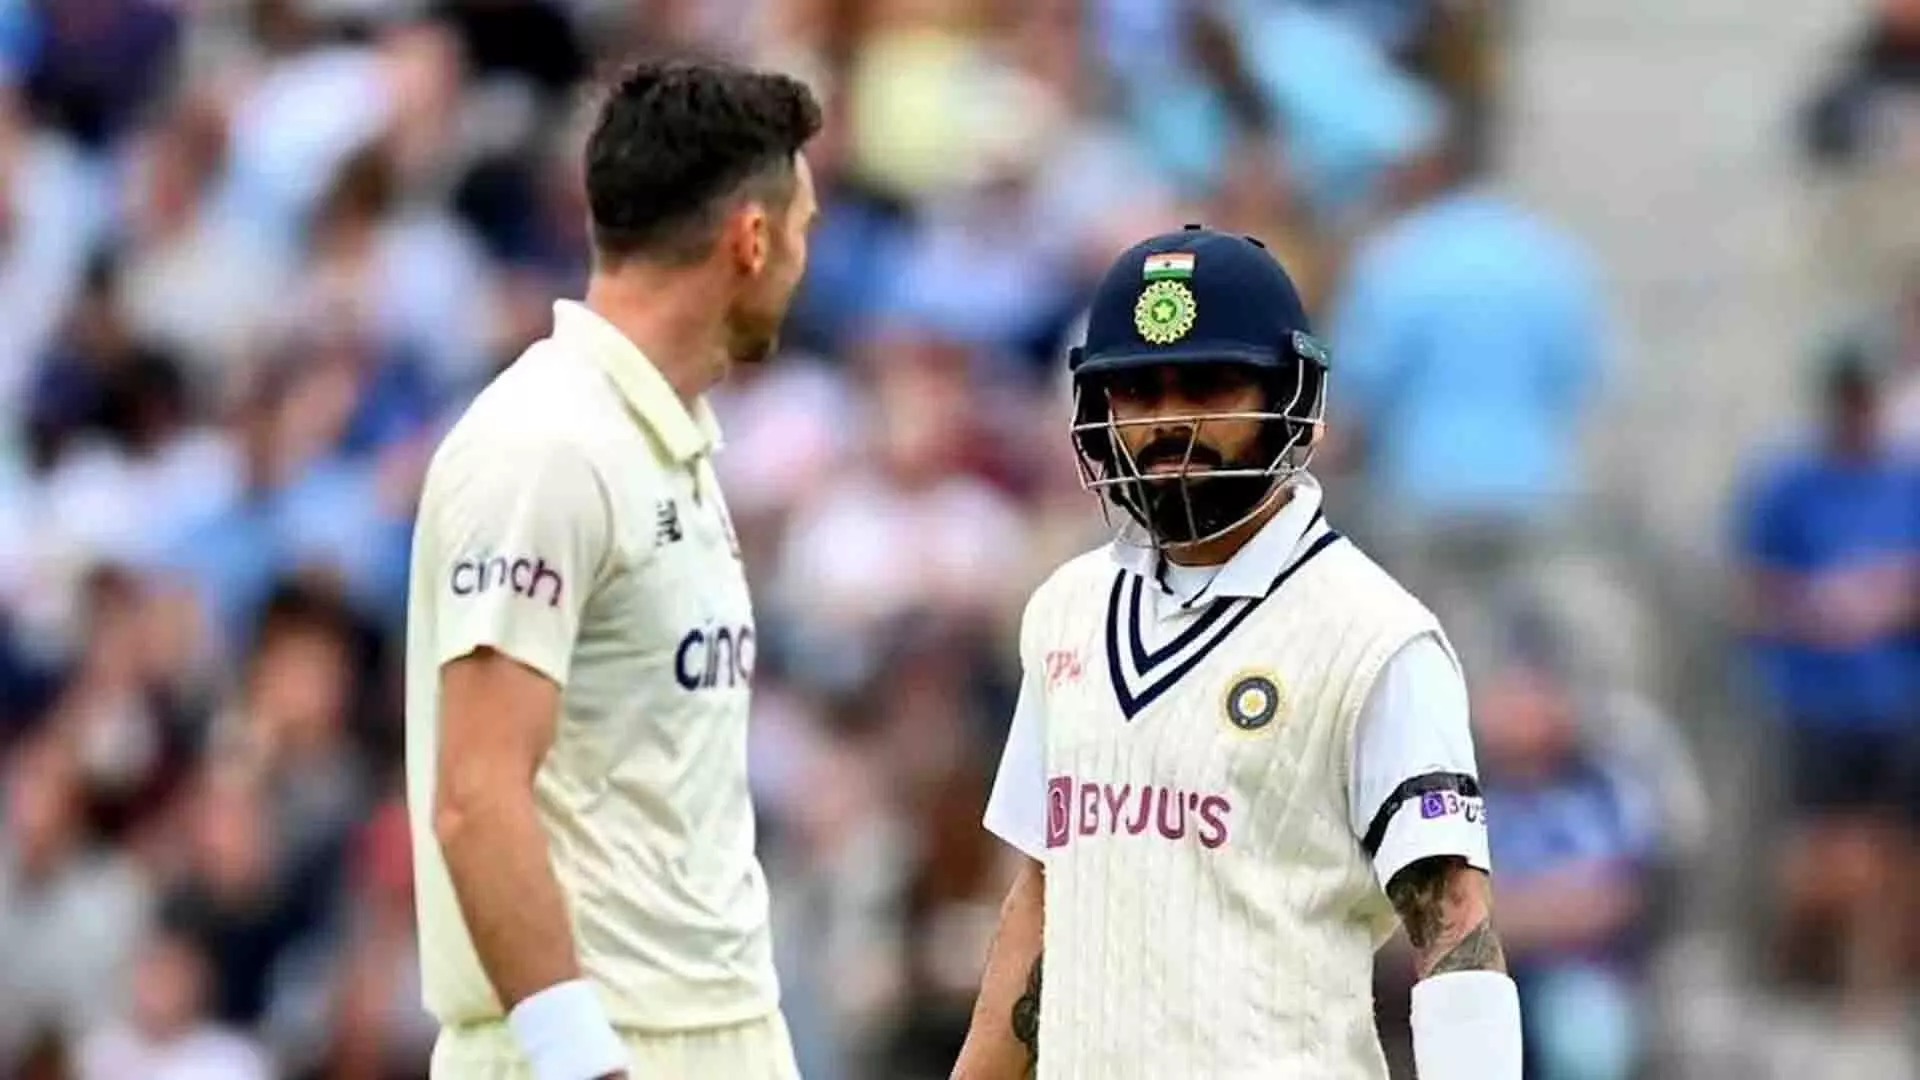 IND vs ENG टेस्ट सीरीज़ में विराट कोहली की अनुपस्थिति पर बोले जेम्स एंडरसन